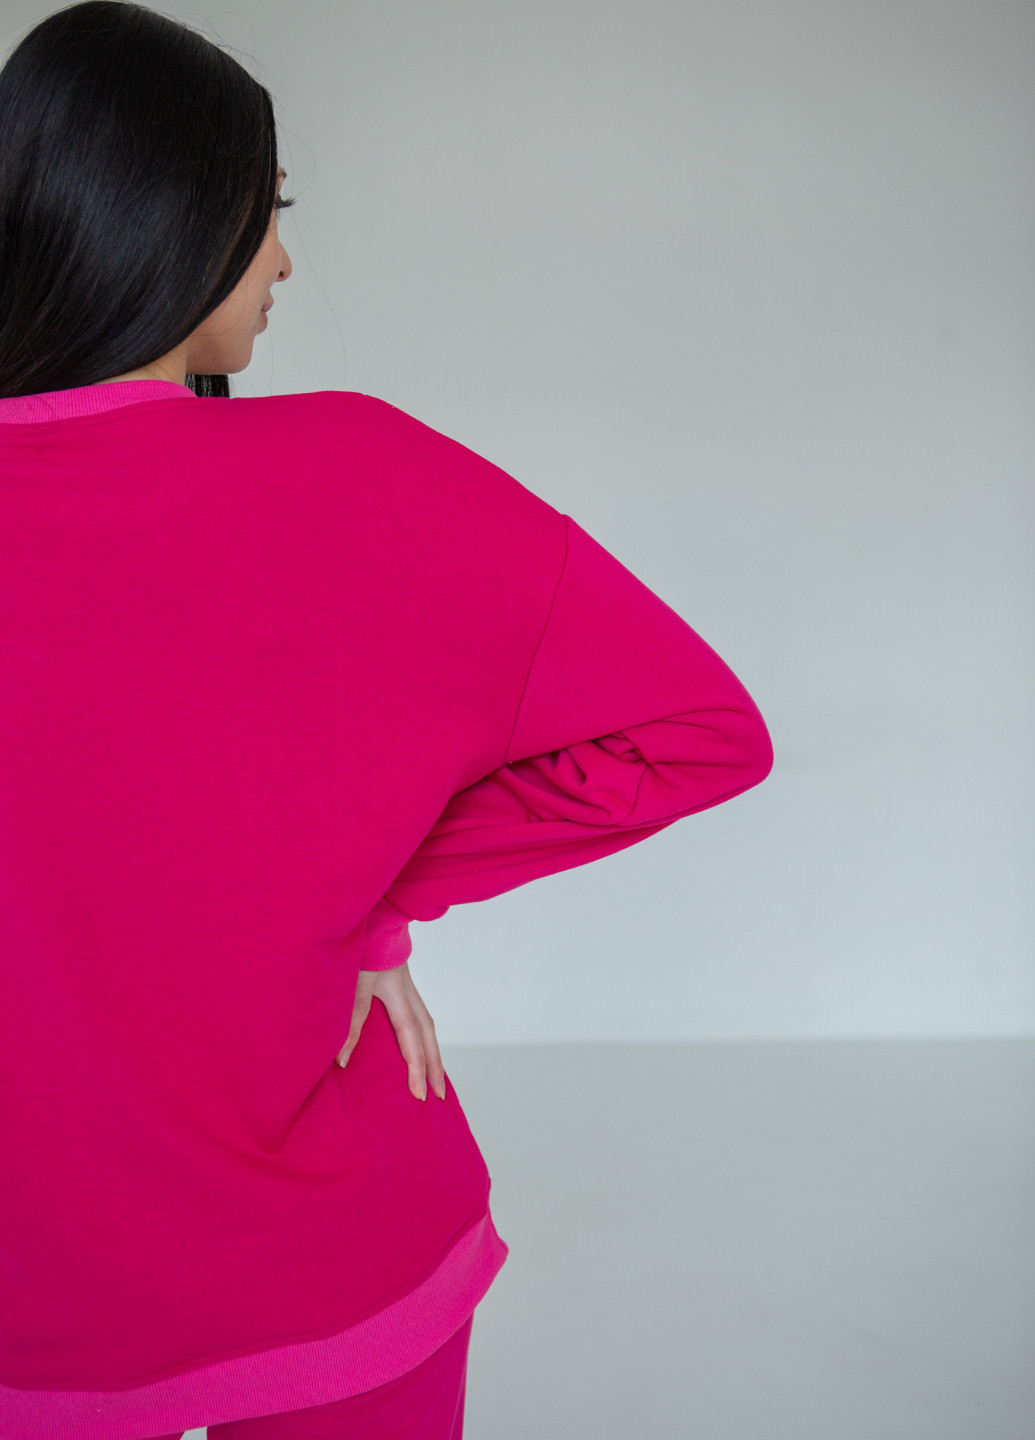 Спортивный костюм для беременных и кормящих мам с секретом для кормления HN (257399085)